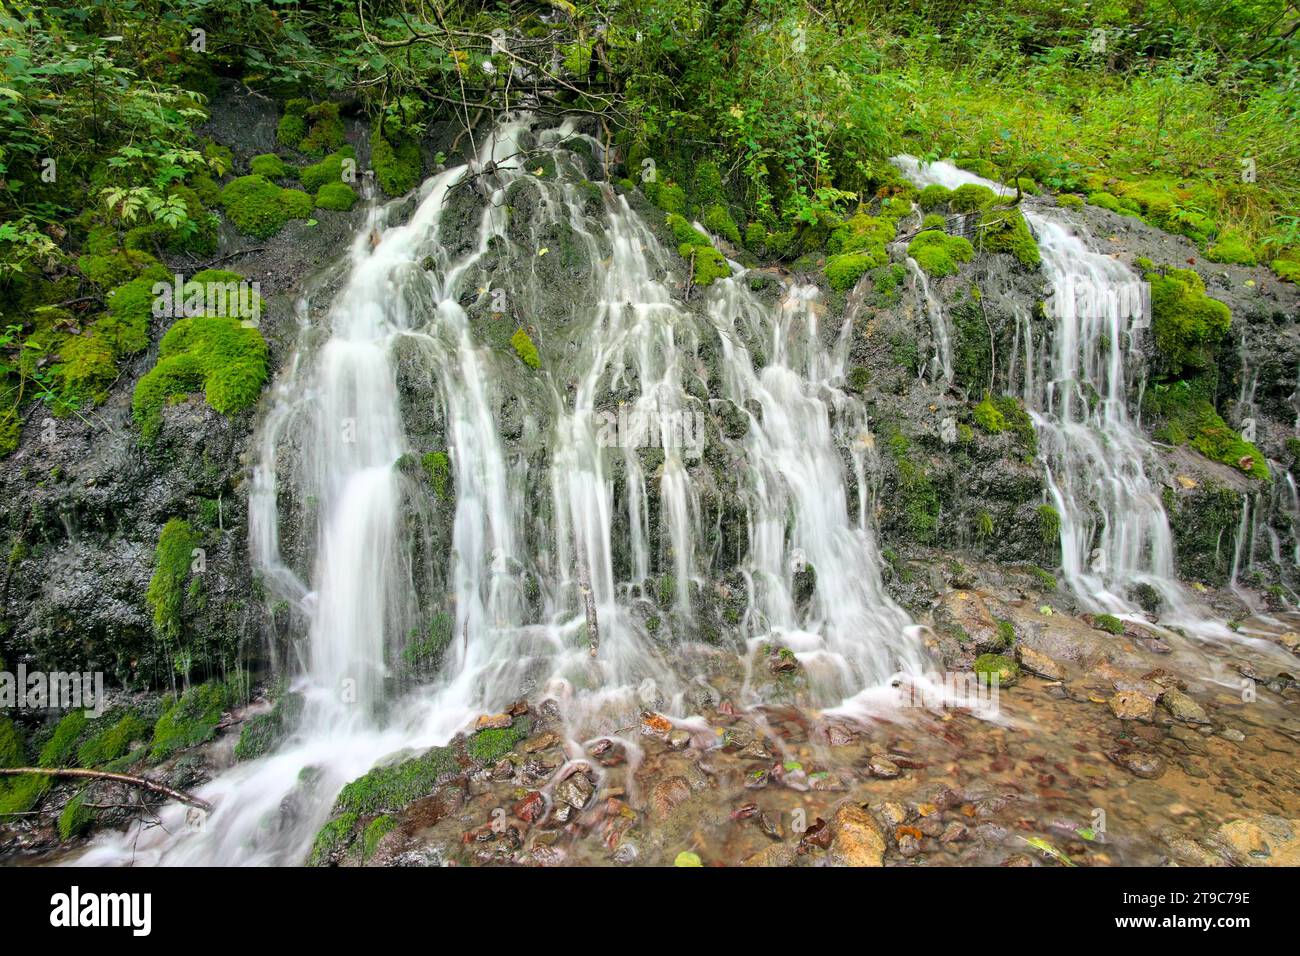 small waterfall Ladjevac near Raca Monastery, Serbia Stock Photo